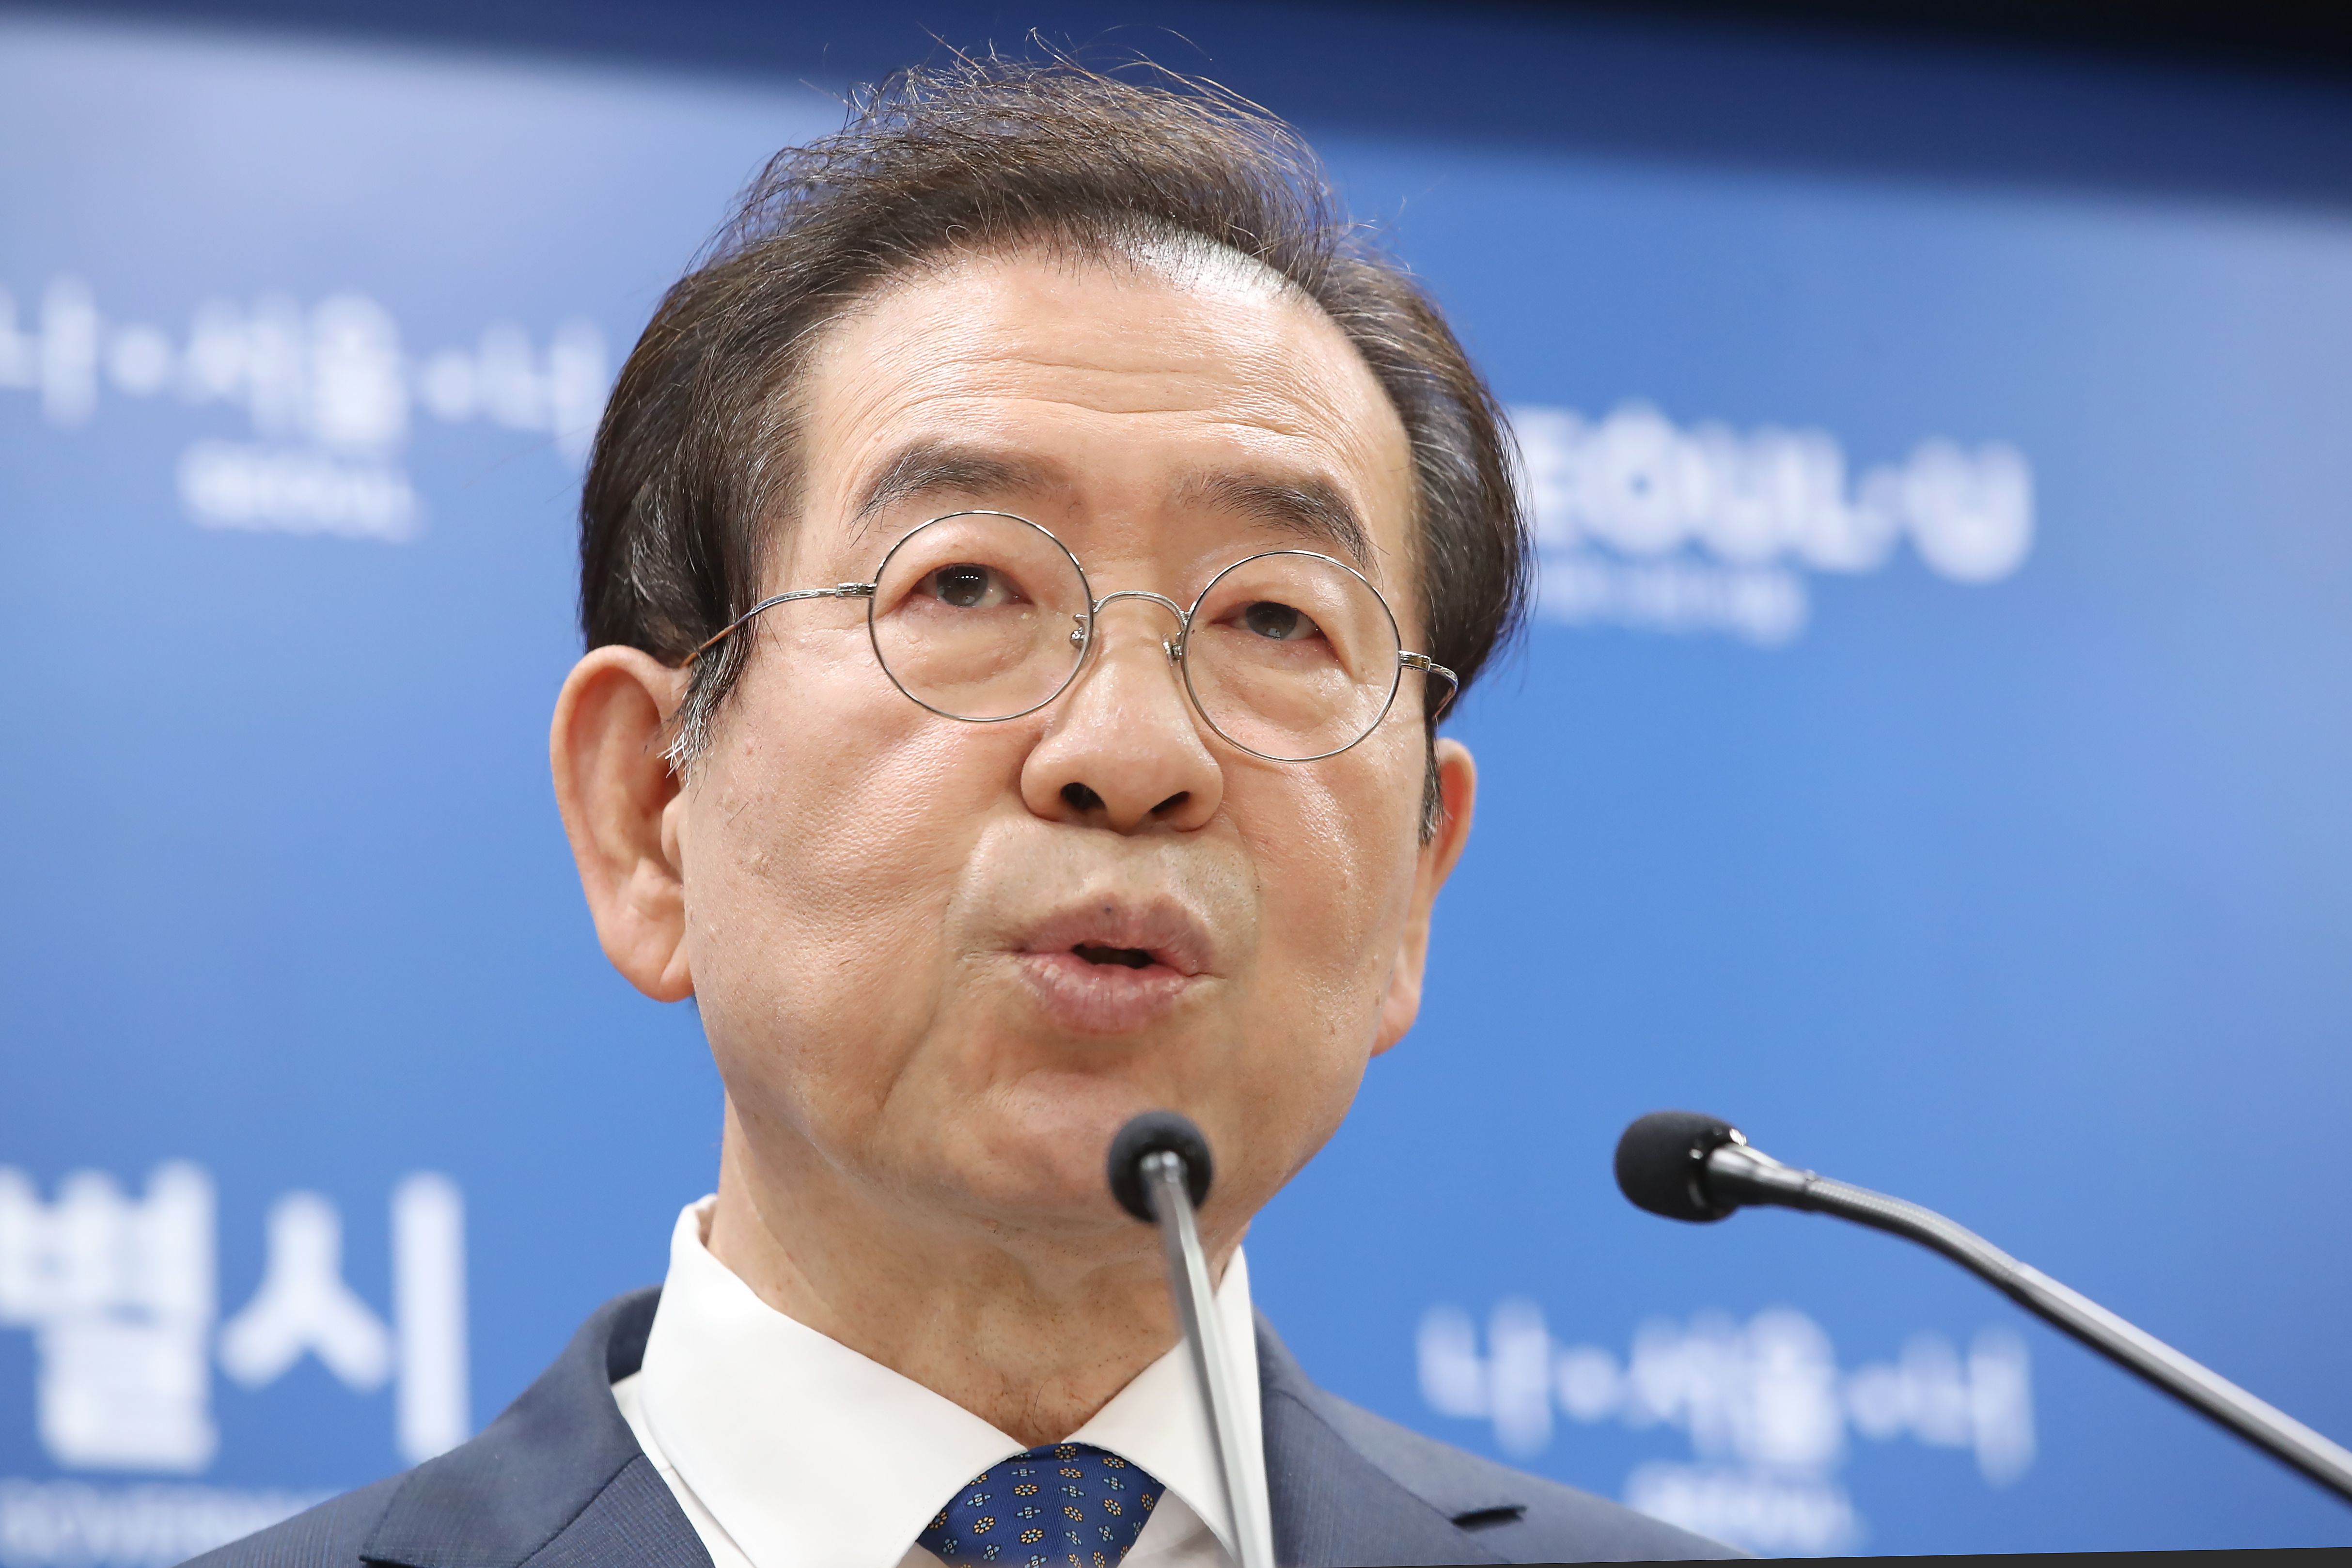 韓国騒然、ソウル市長がセクハラ疑惑のさなかに死亡　次期大統領候補を突如失った文政権、さらなる混乱は不可避に